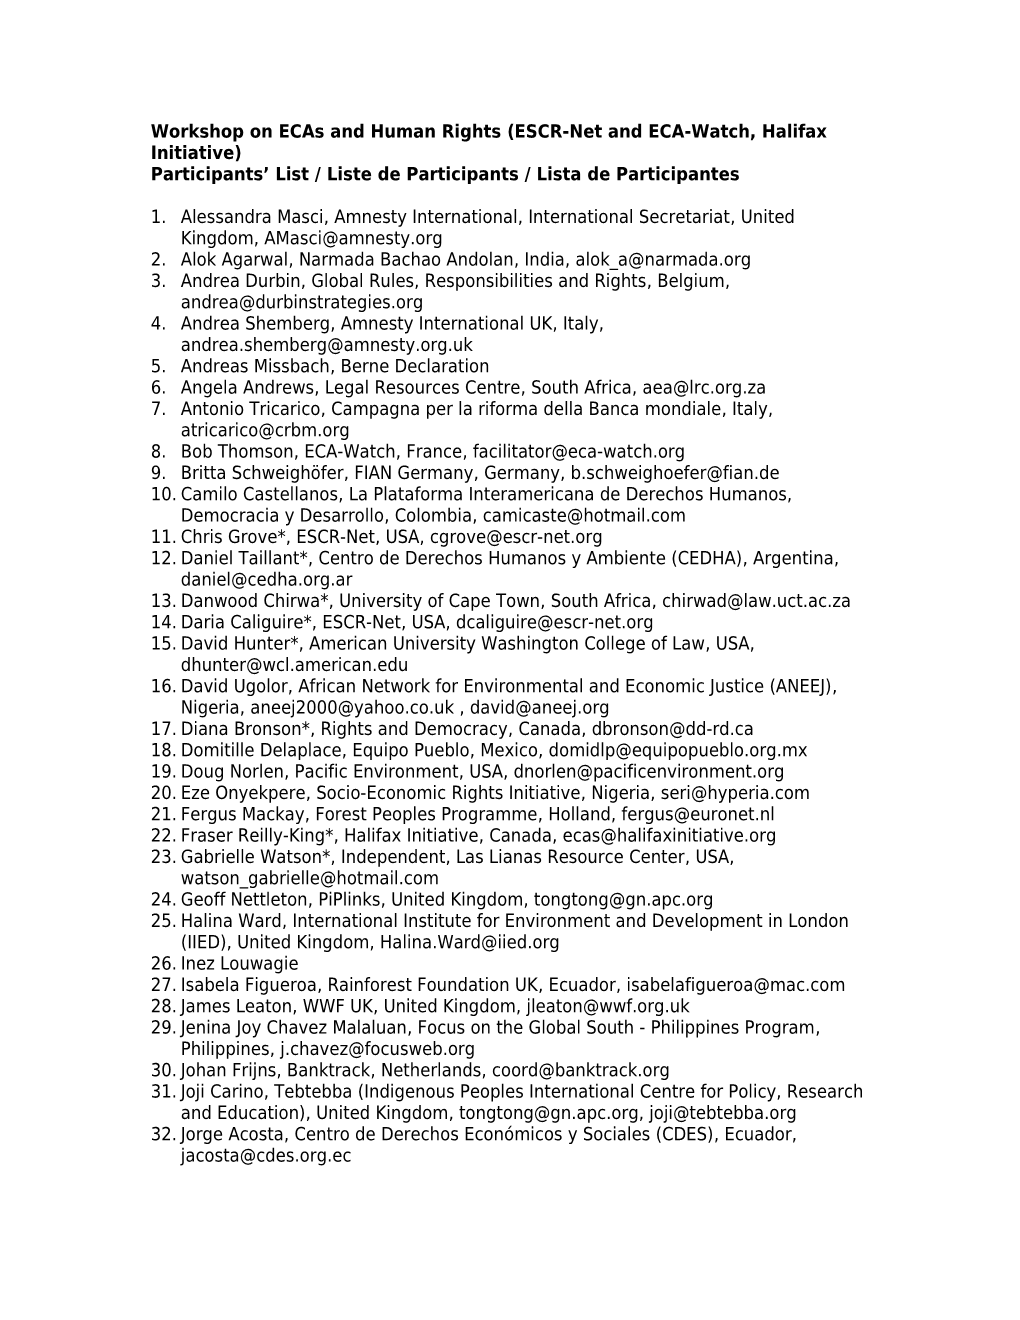 Participants List / Liste De Participants / Lista De Participantes